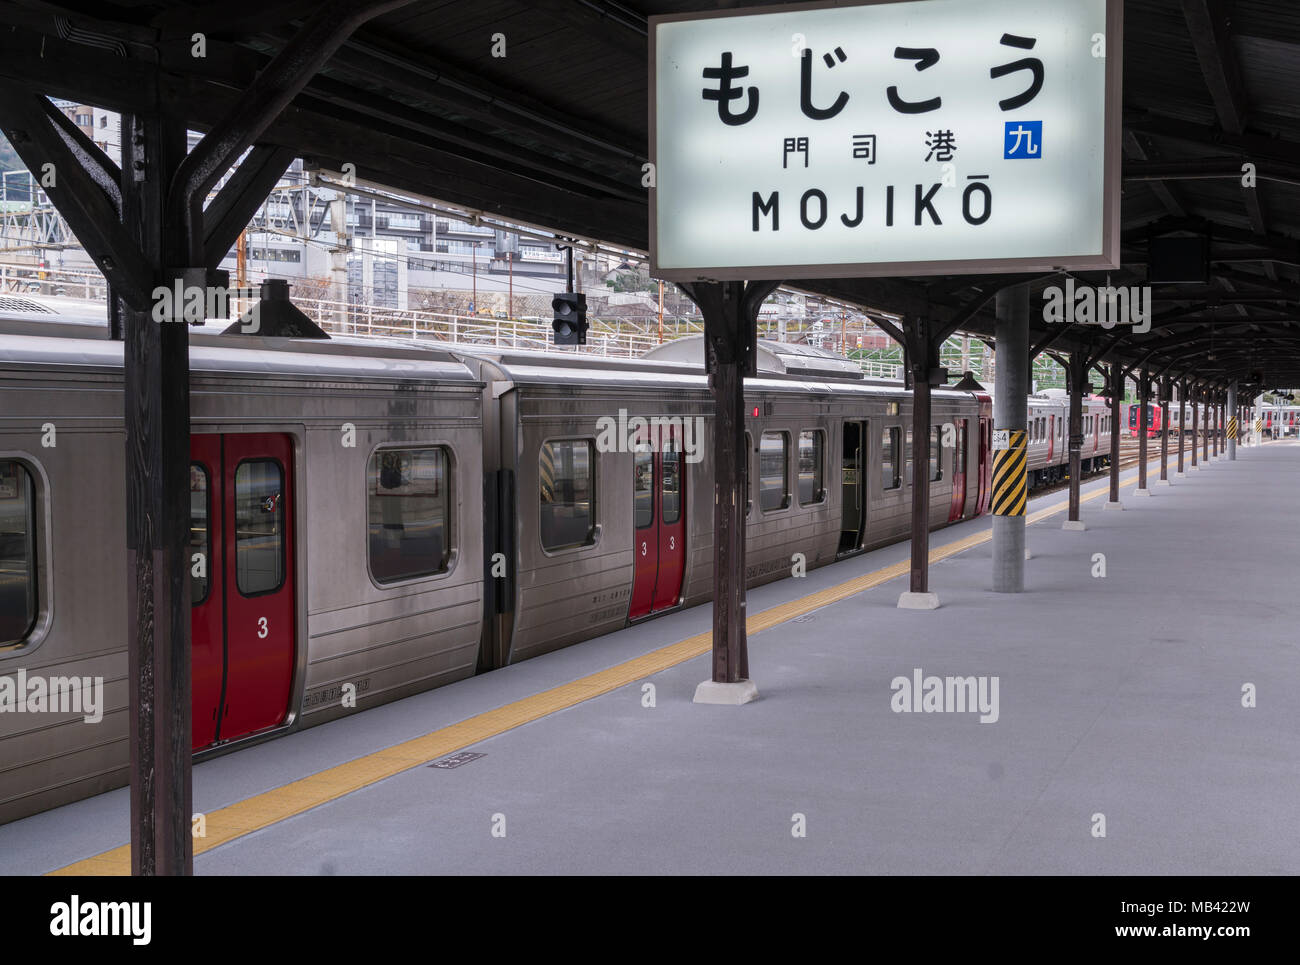 Una rampa in Giappone (JR Kyushu) il treno alla stazione di Mojiko in Kitakyushu, Giappone. Foto Stock